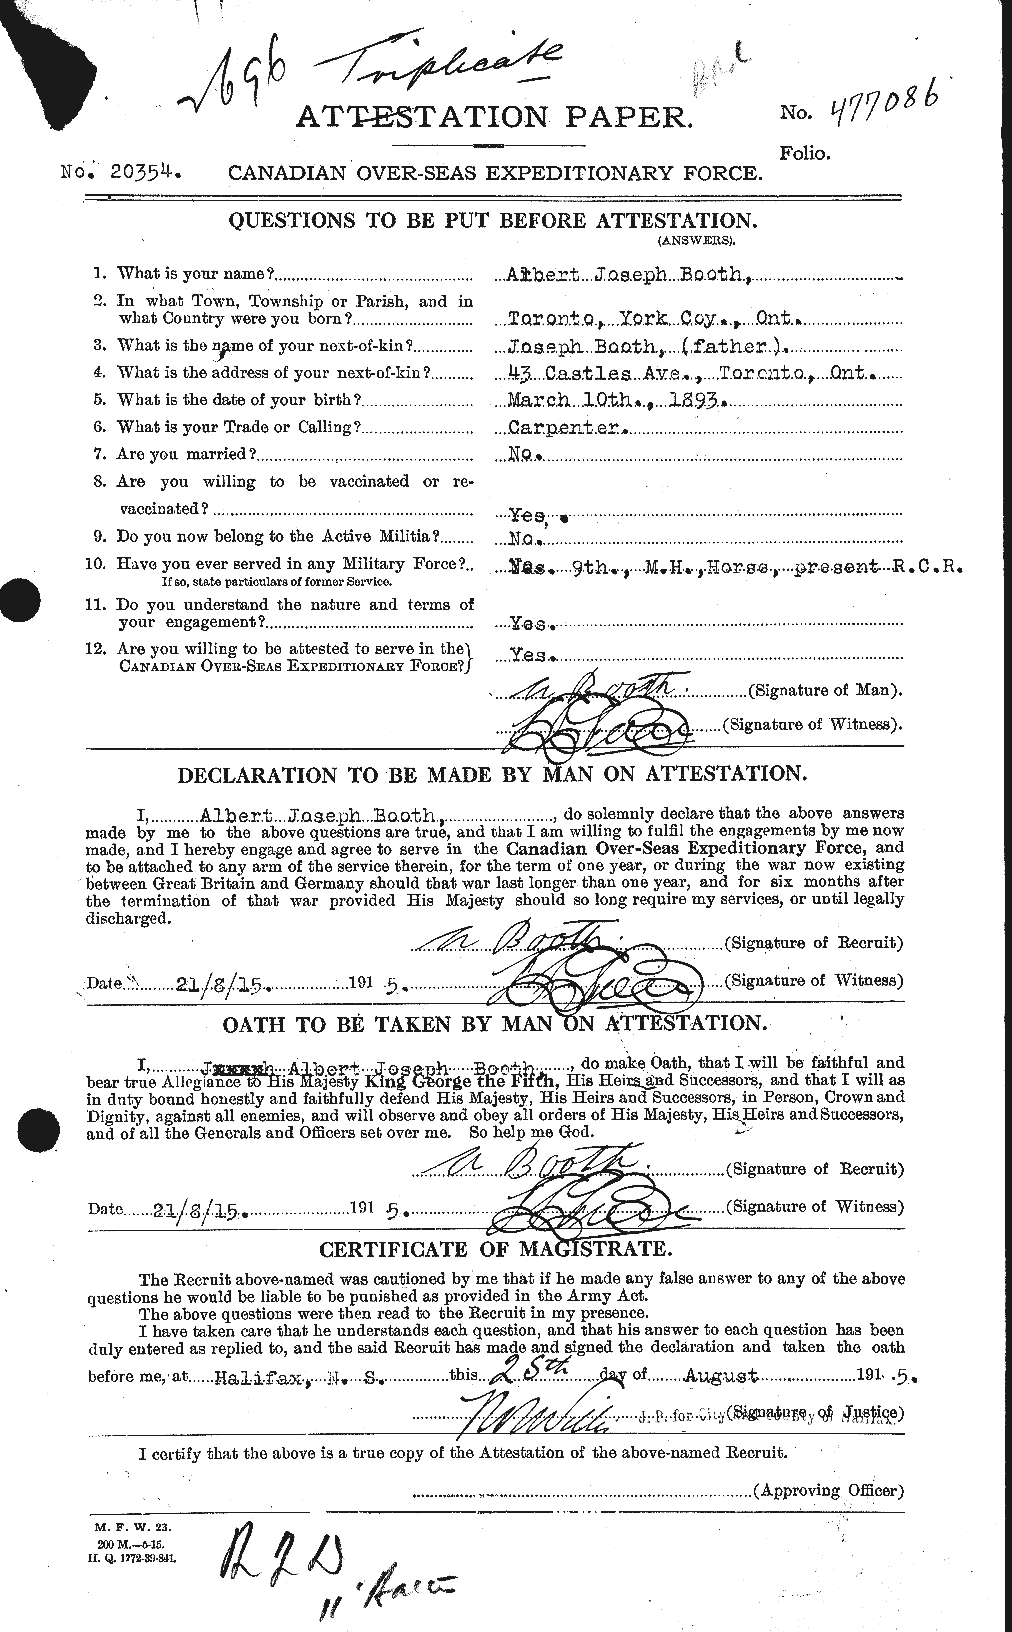 Dossiers du Personnel de la Première Guerre mondiale - CEC 251418a